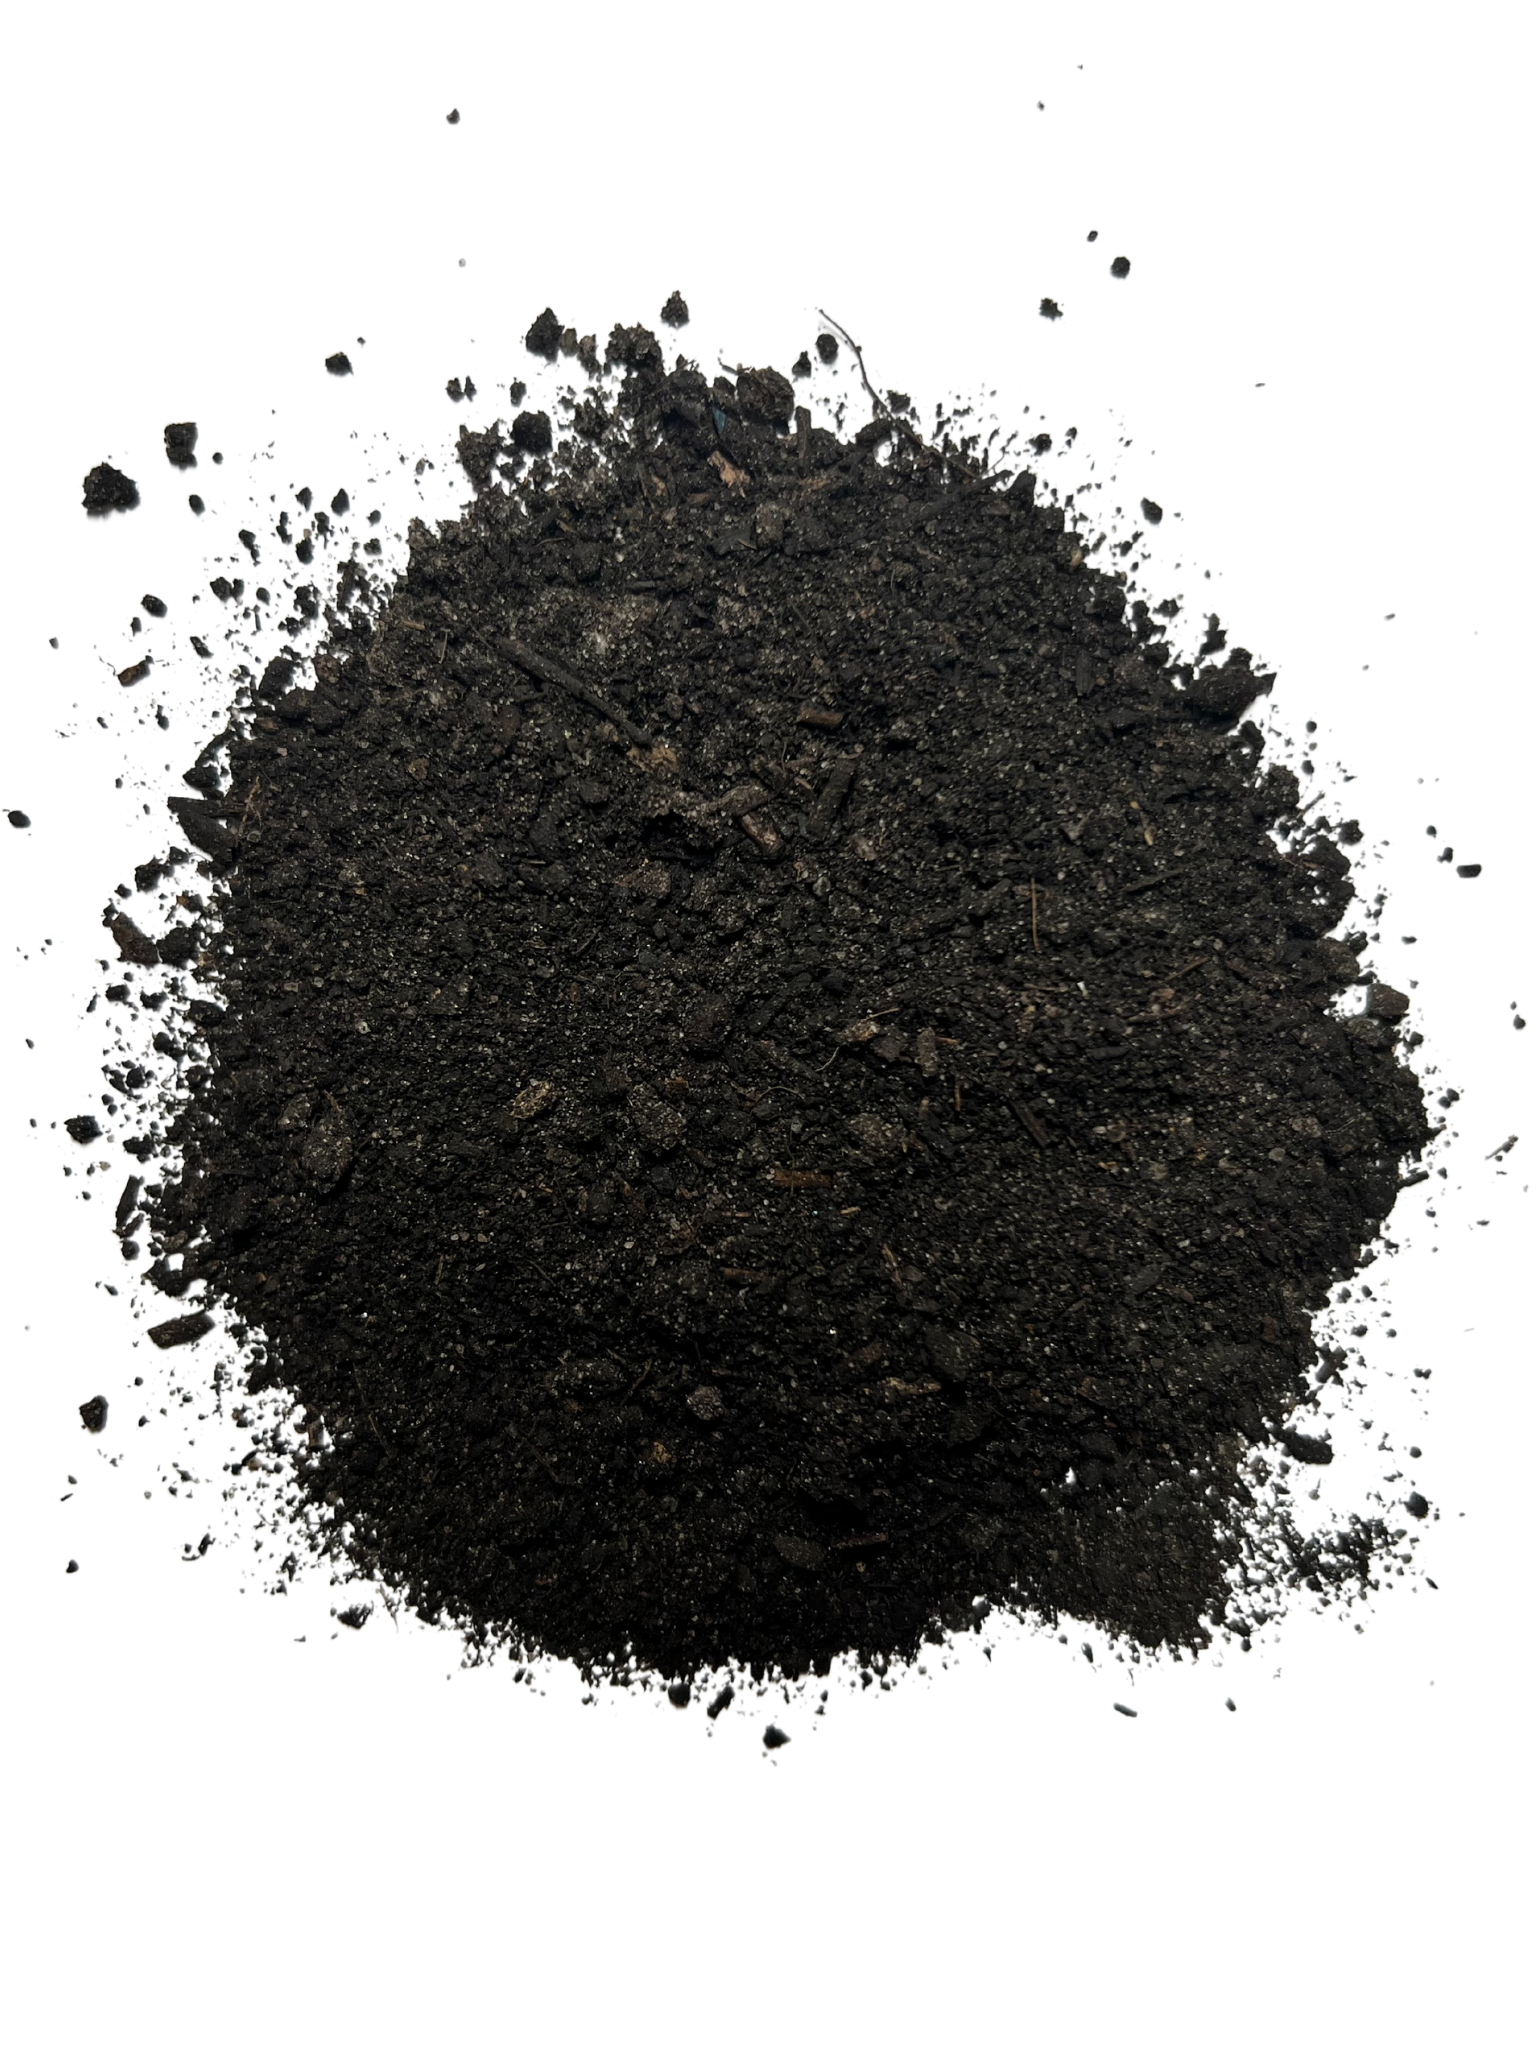 CarbonizPN® Soil Enhancer